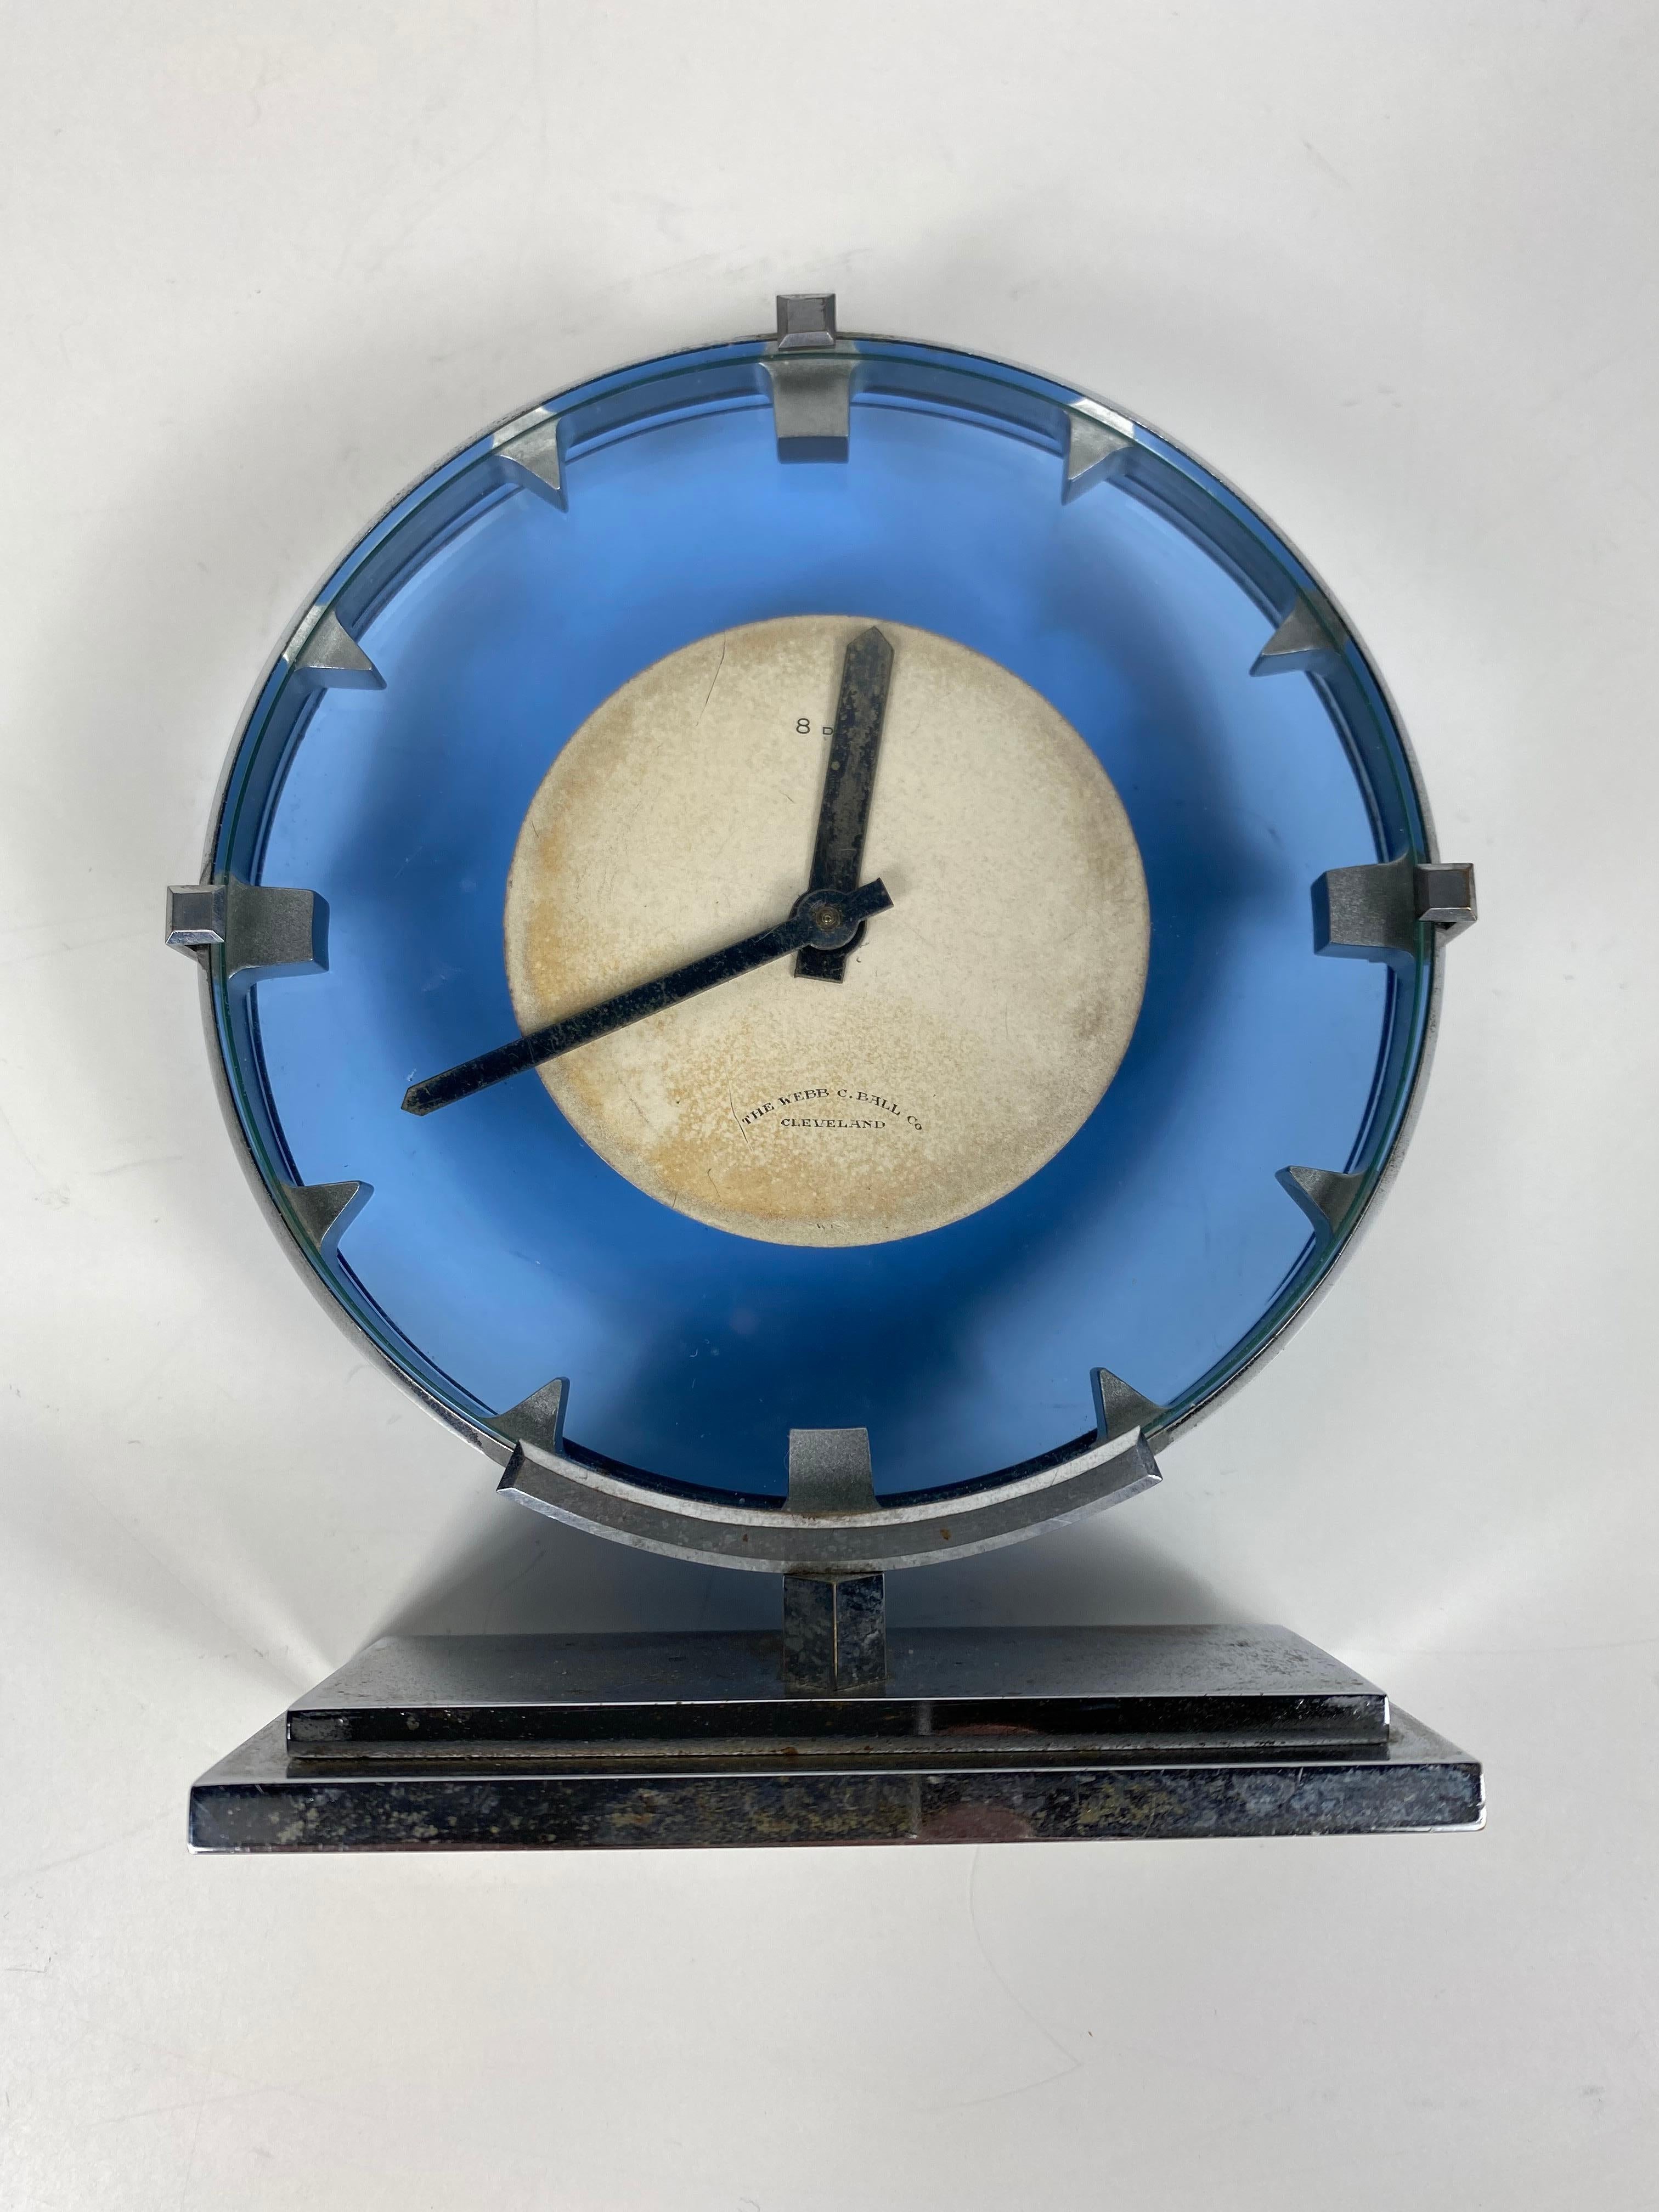 Impresionante reloj Art Decó / Machine Age de acero inoxidable y cristal azul fabricado por The Webb C.Ball co...Cleveland, reloj de sobremesa de cuerda de 8 días, diseño modernista clásico... funciona y da la hora perfectamente.

La WEBB C. BALL